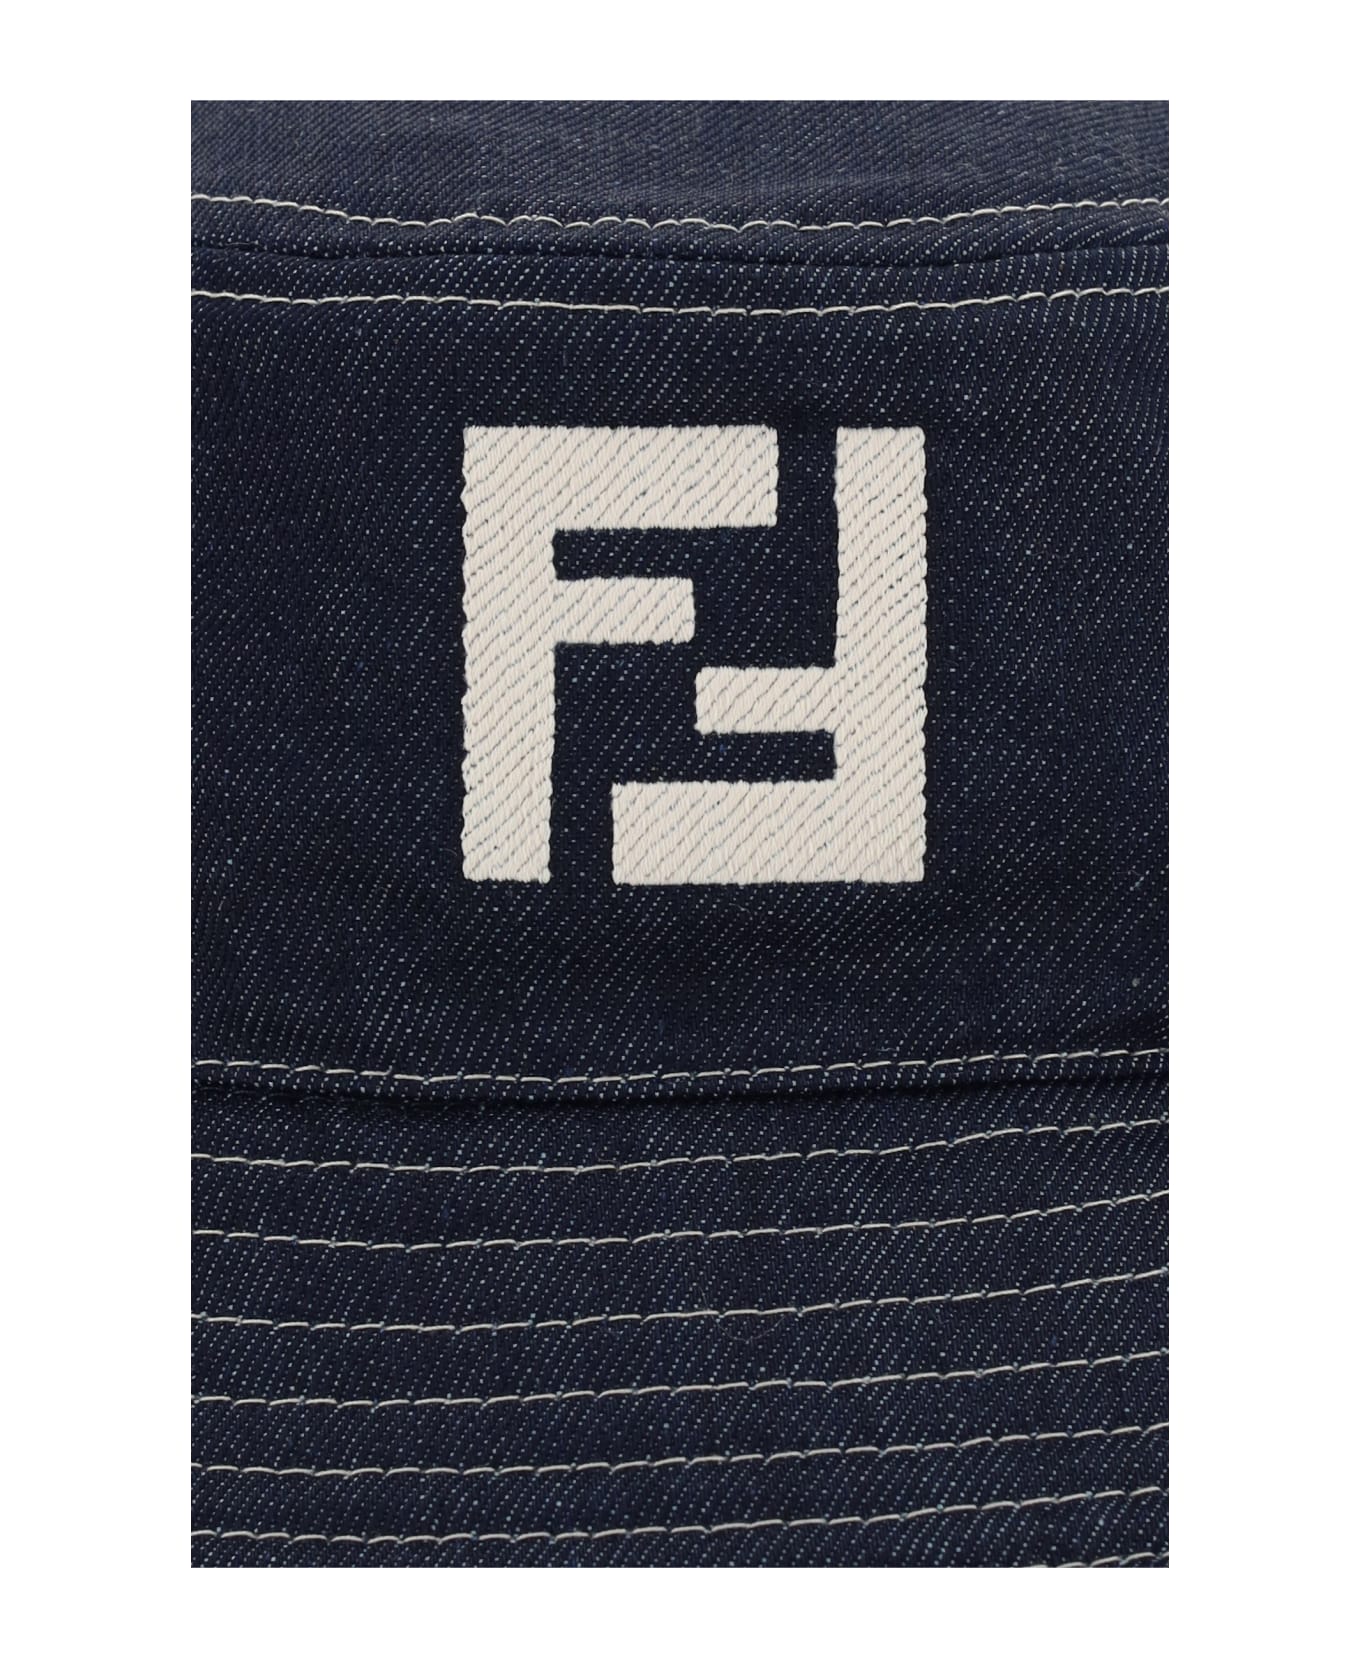 Fendi Cloche - Blu 帽子